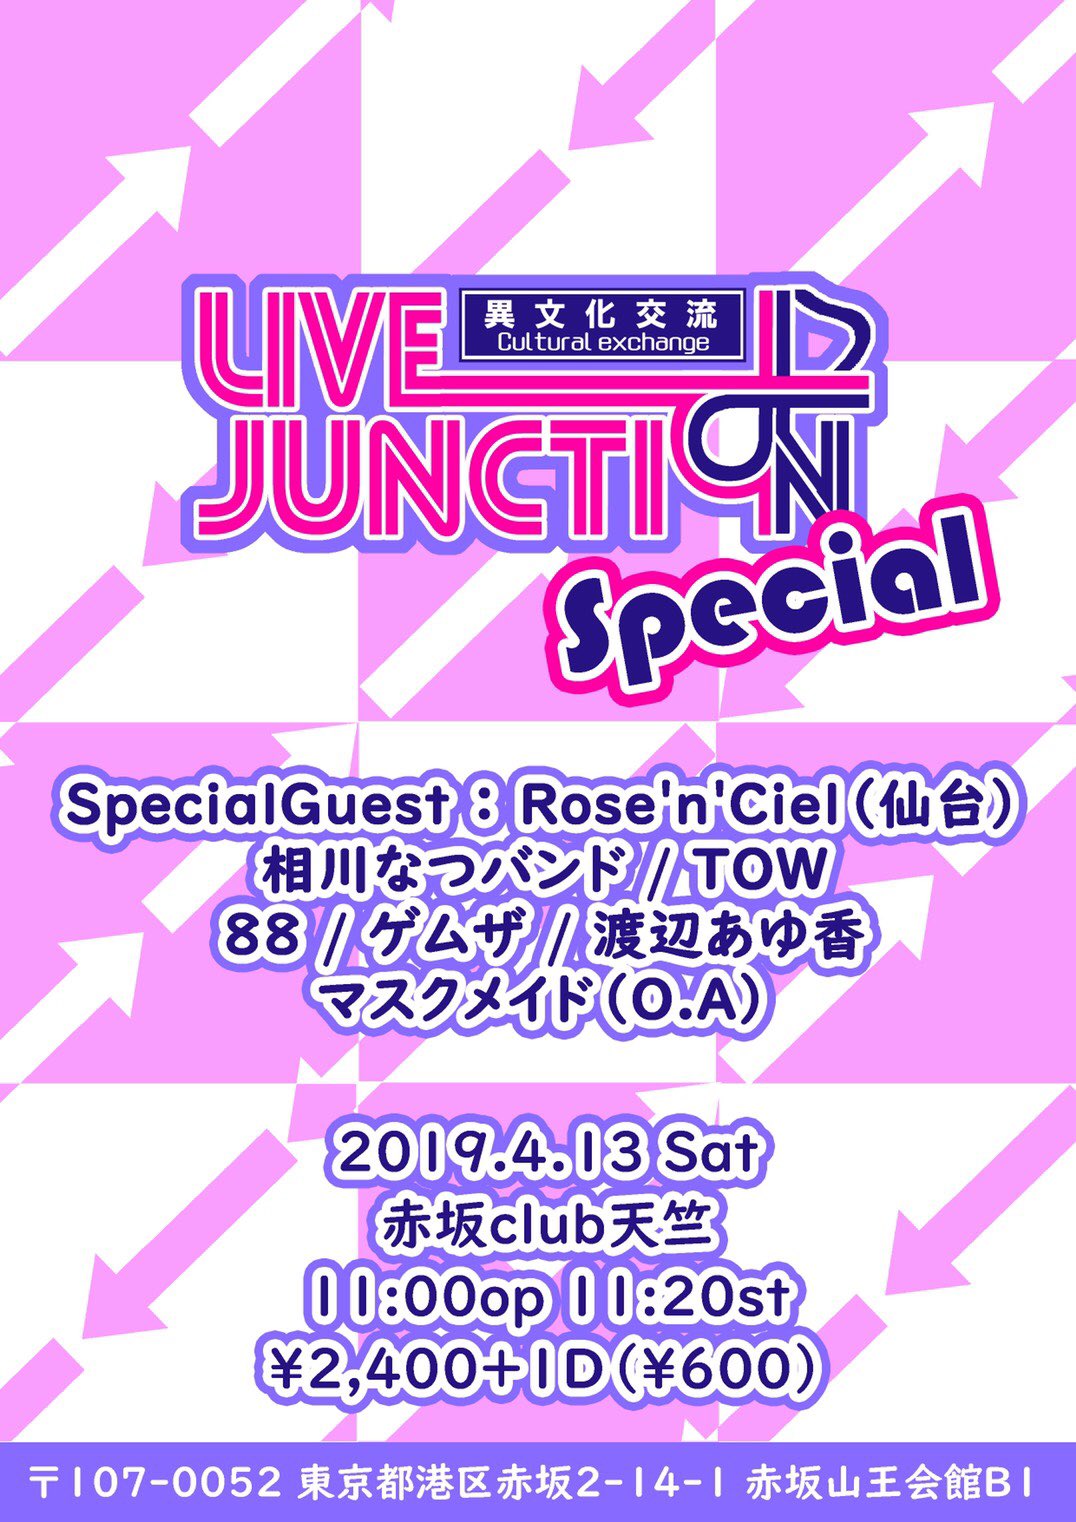 4月13日(土)主催ライブ「異文化交流-LIVE Junction SP-」!!!